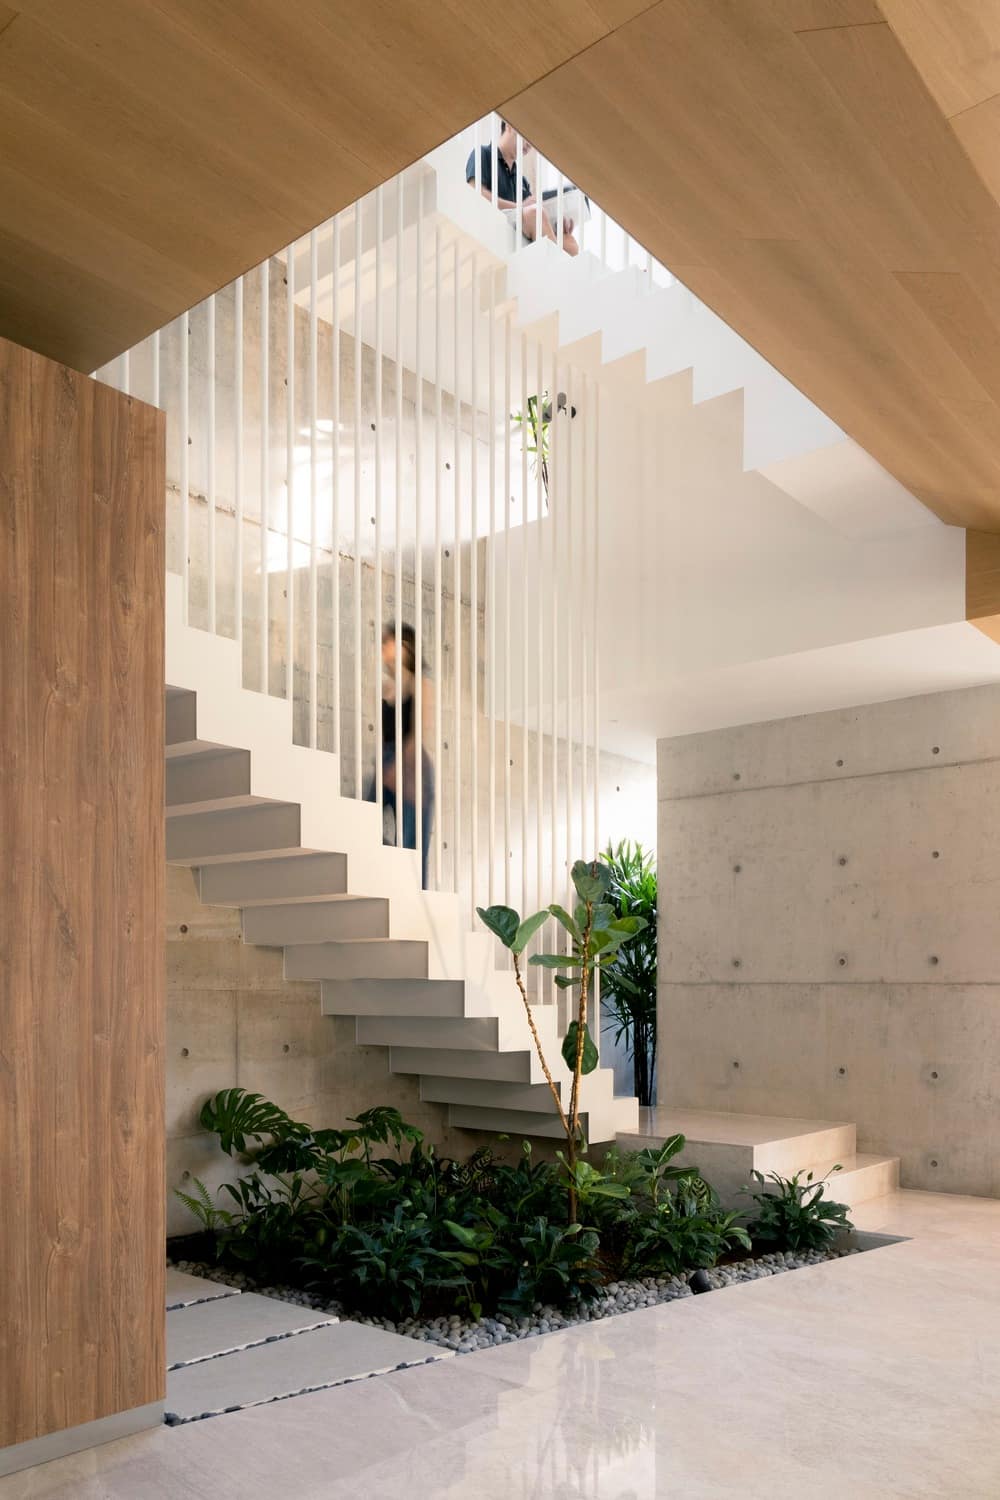 Terubok House, Singapore / CDG Architects